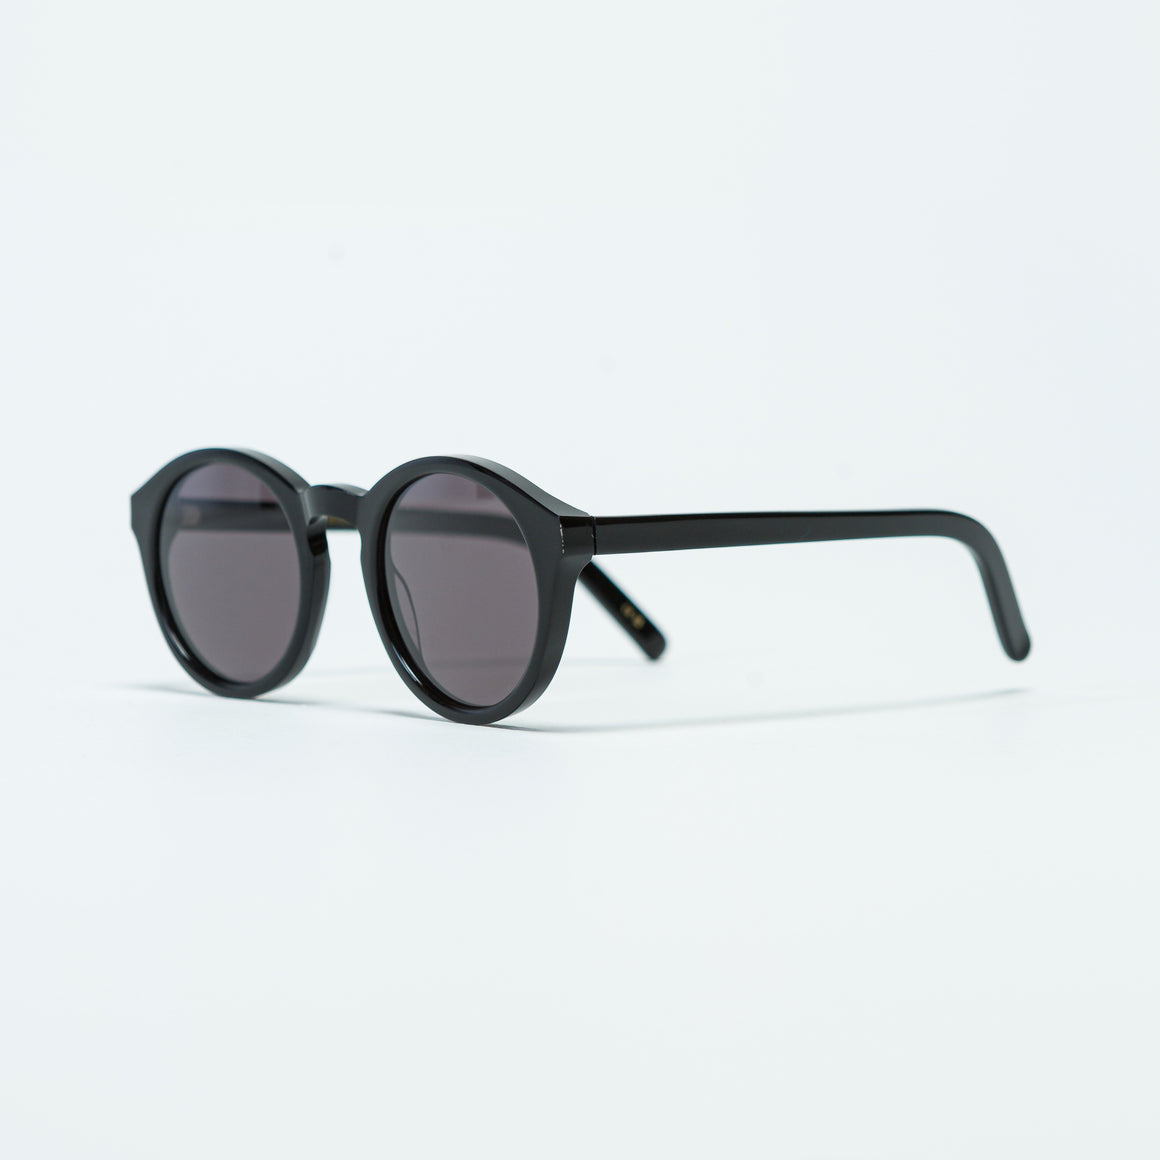 Monokel Eyewear - Barstow - Black/Grey Solid - UP THERE